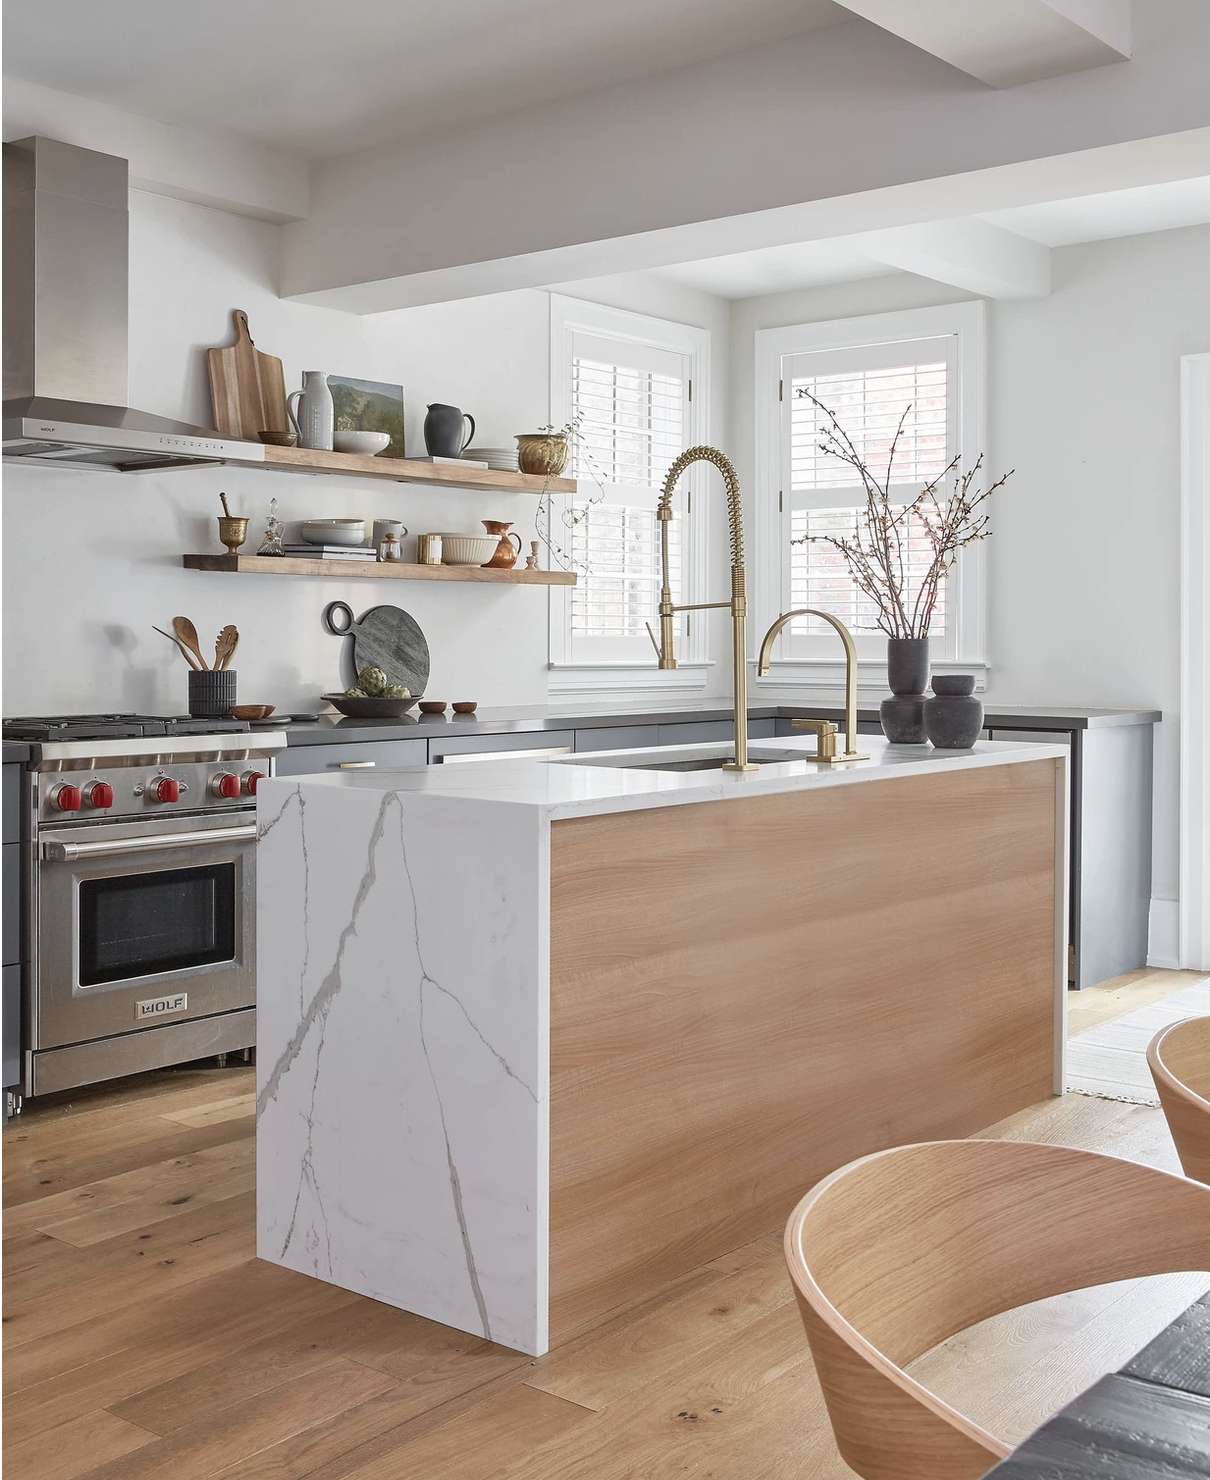 cozinha branca moderna com ilha de mármore e detalhes em madeira quente